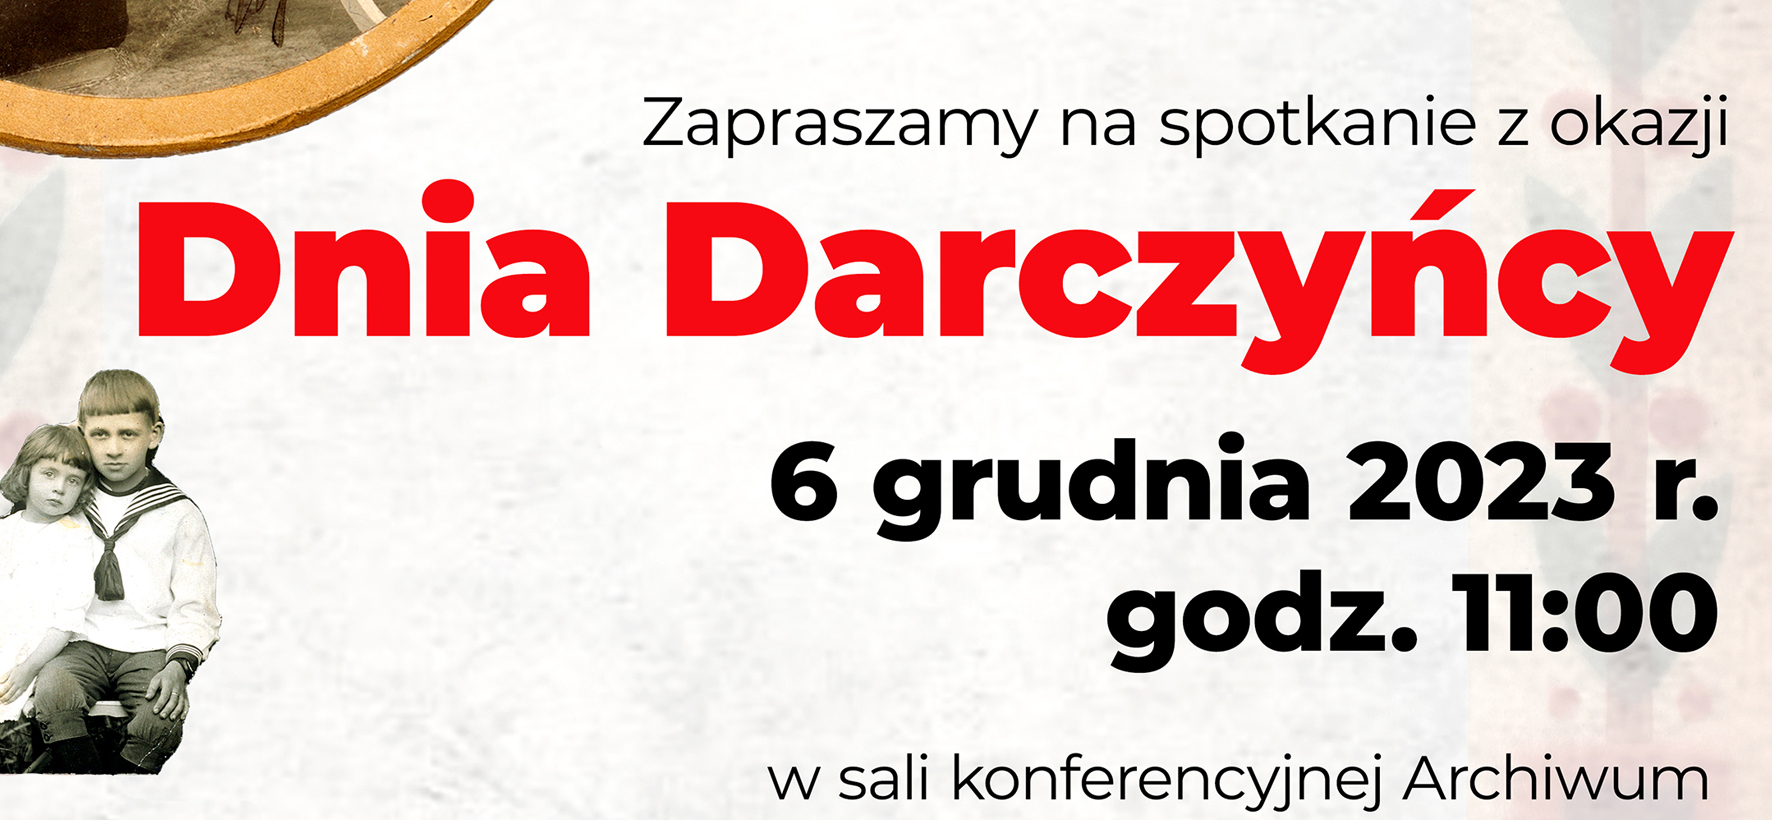 Obchody Dnia Darczyńcy w APL, 6 grudnia 2023 r.